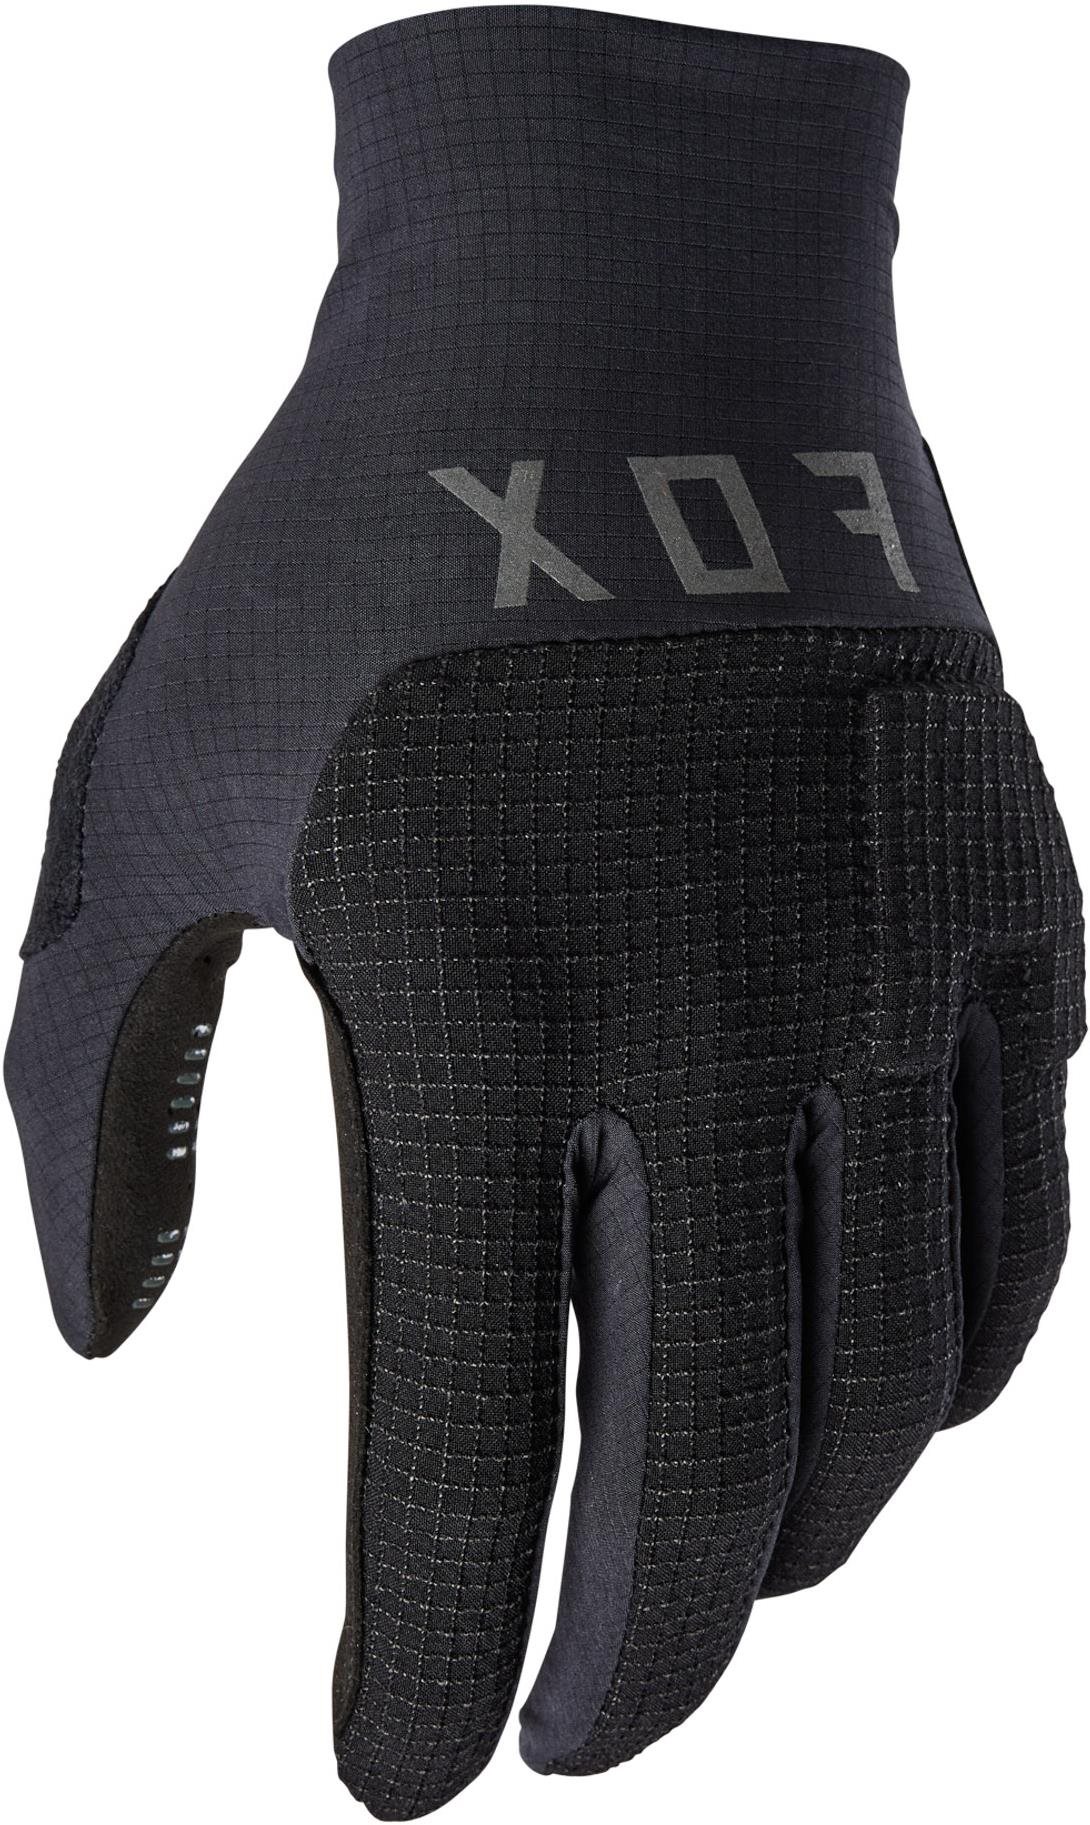 Biciklis kesztyű Fox Flexair Pro Glove S